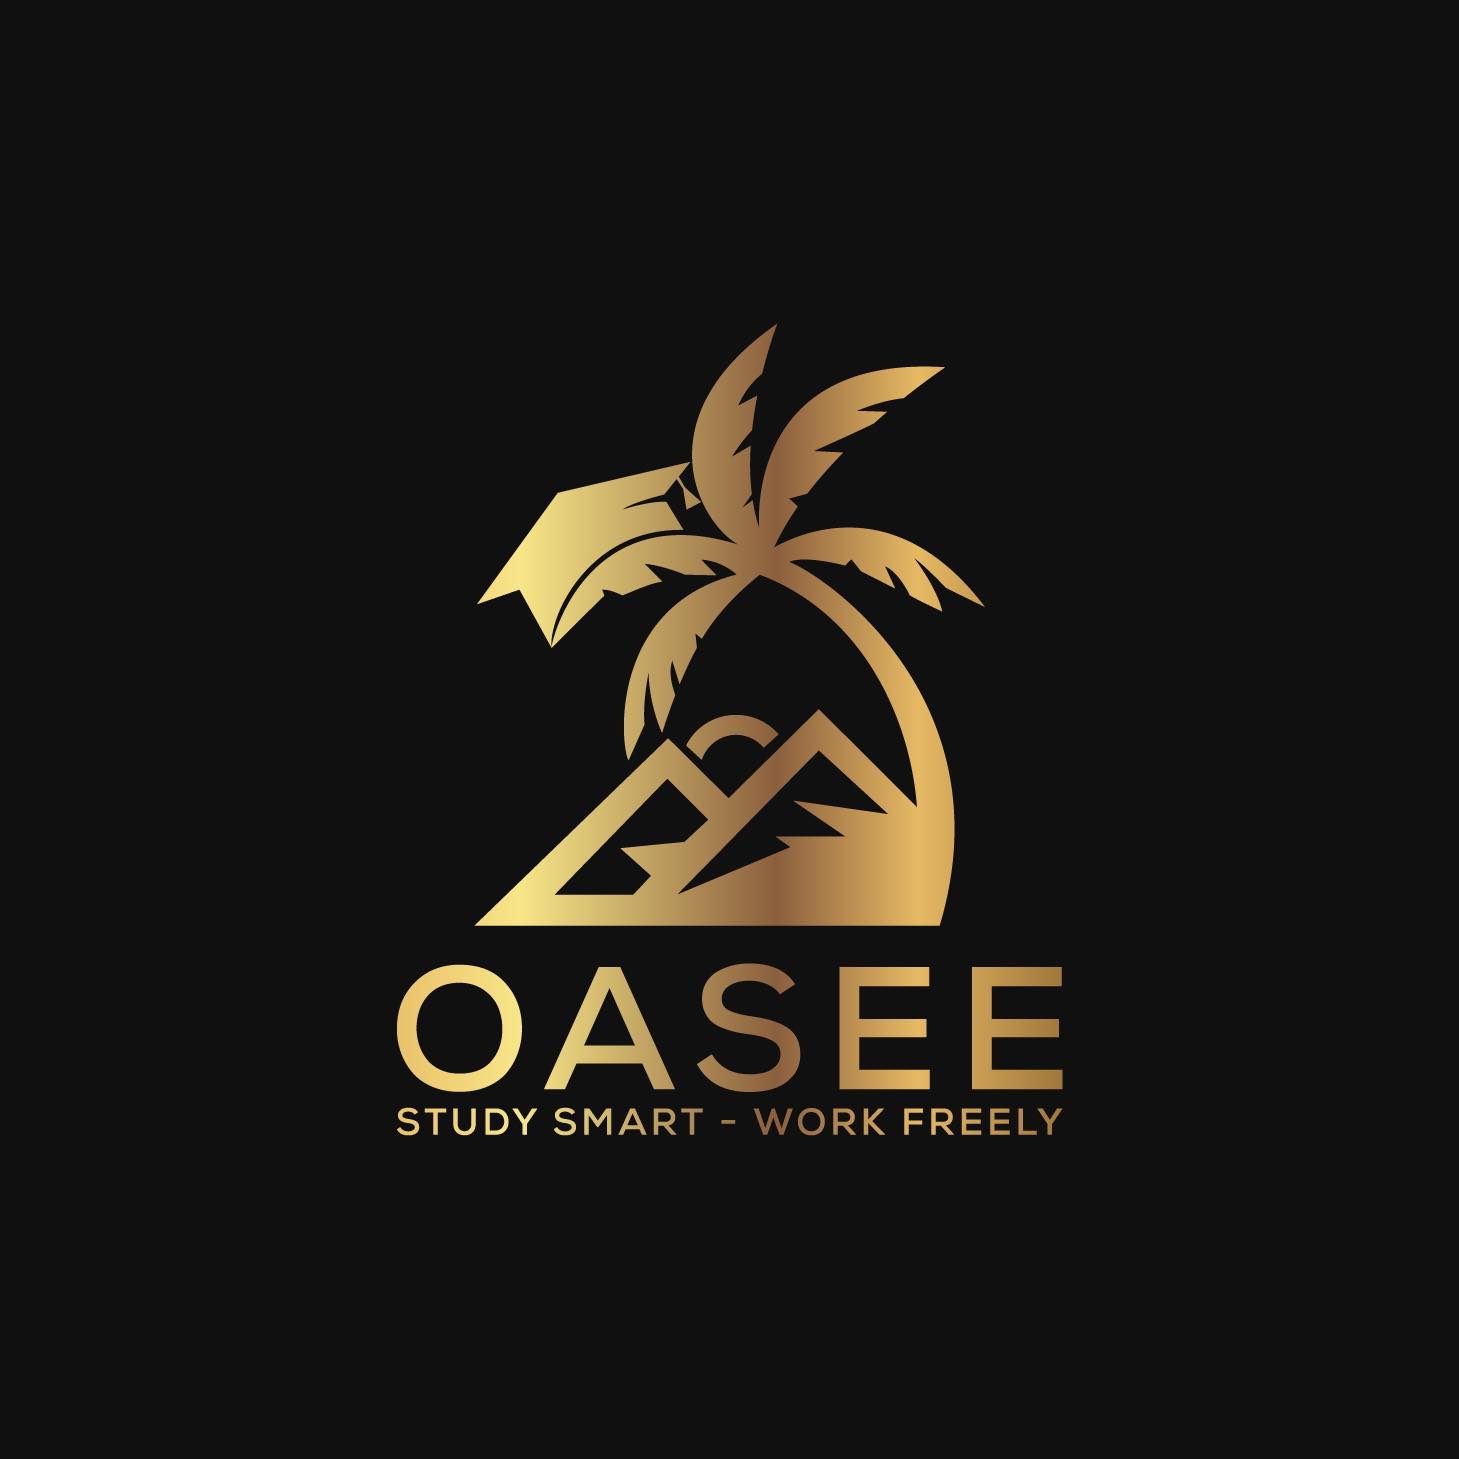 oasee logo